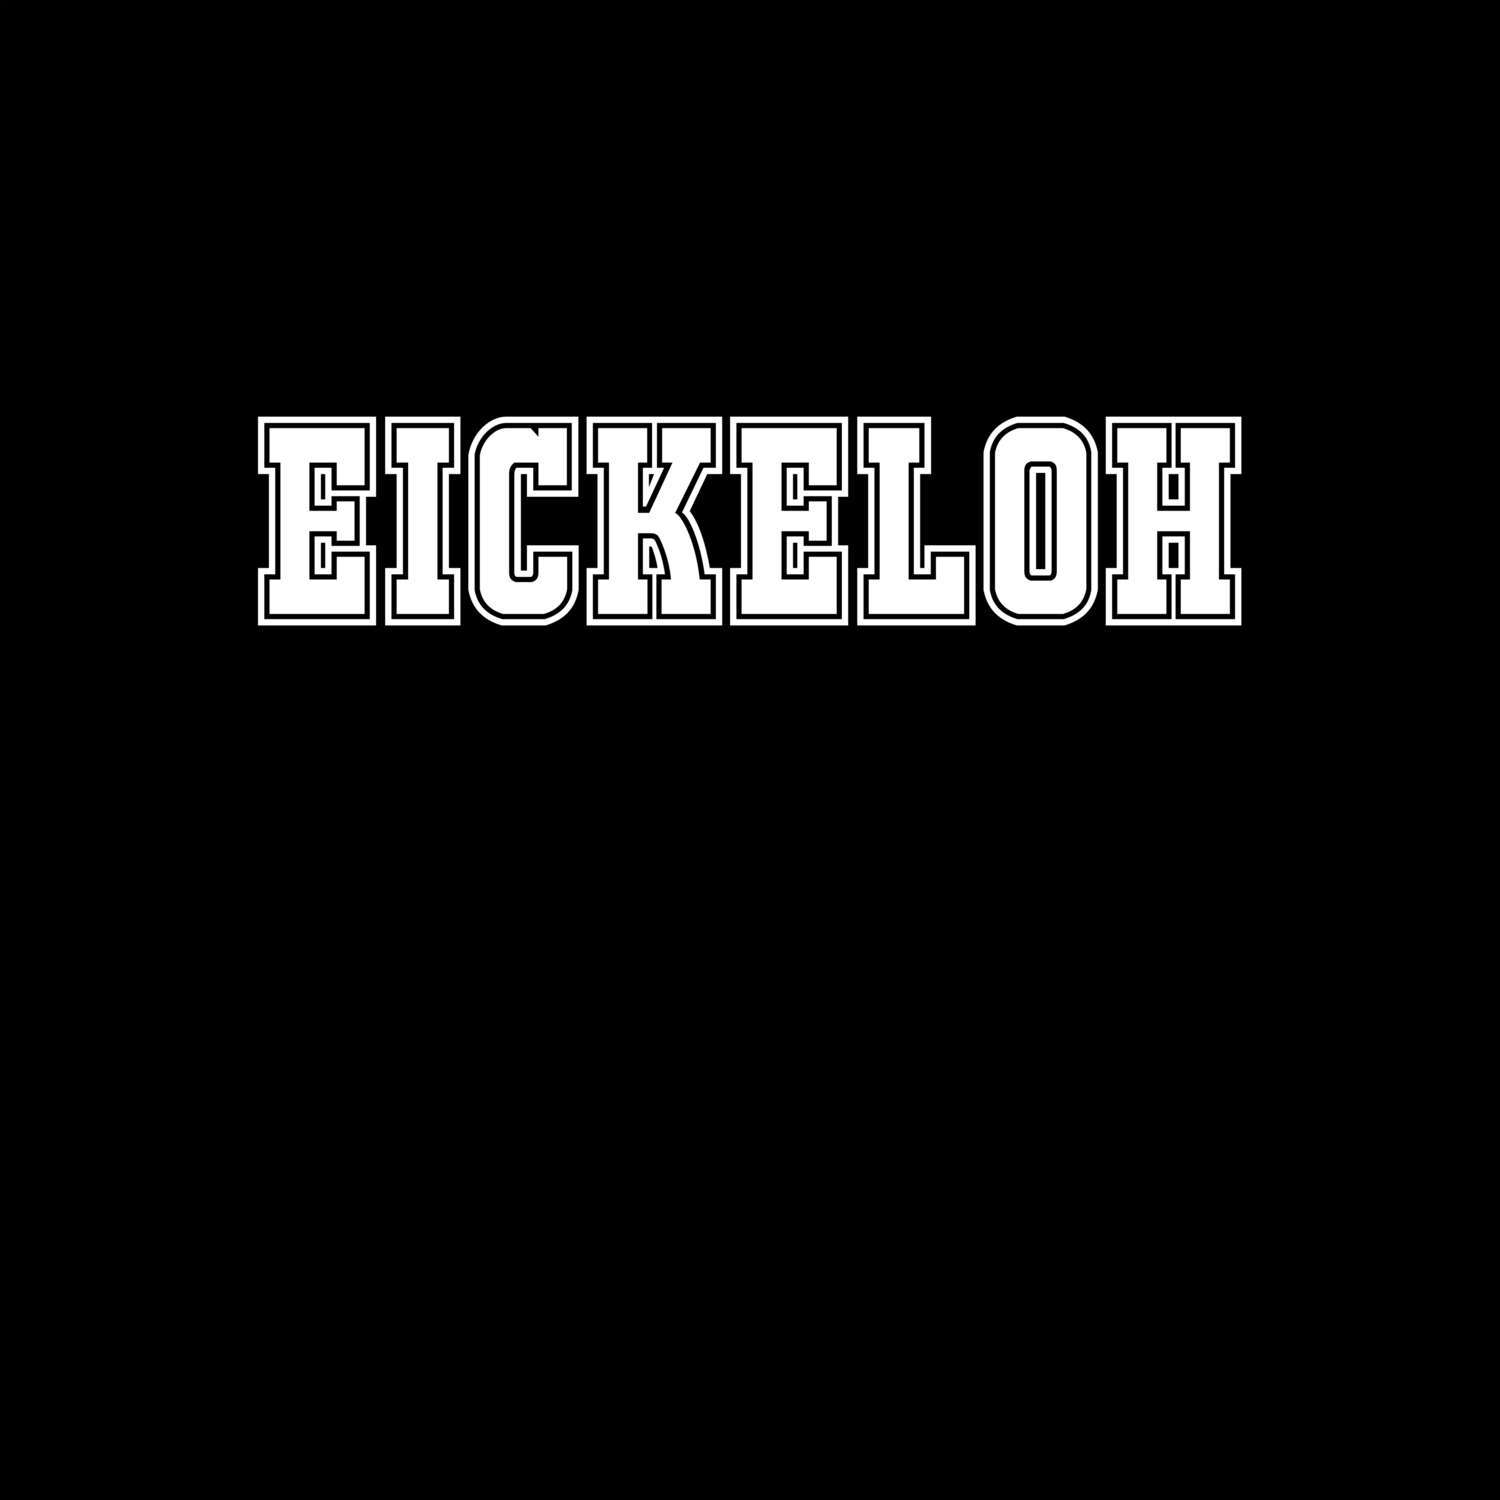 Eickeloh T-Shirt »Classic«